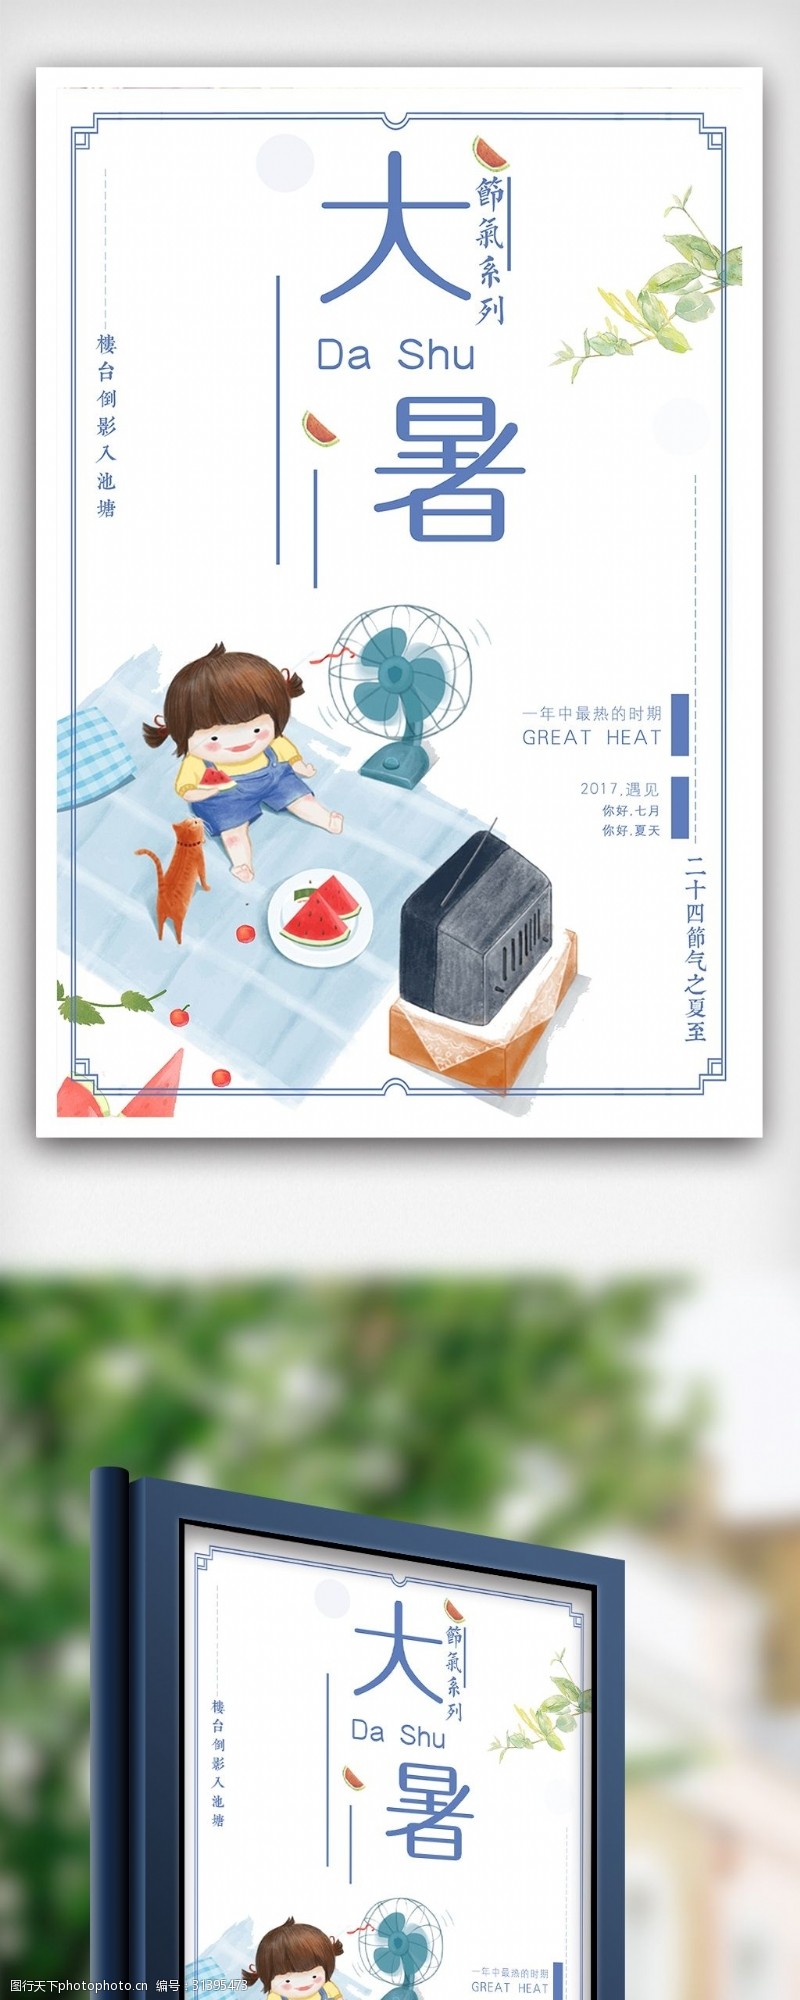 7月促销大暑24二十四节气中国风传统创意手绘海报